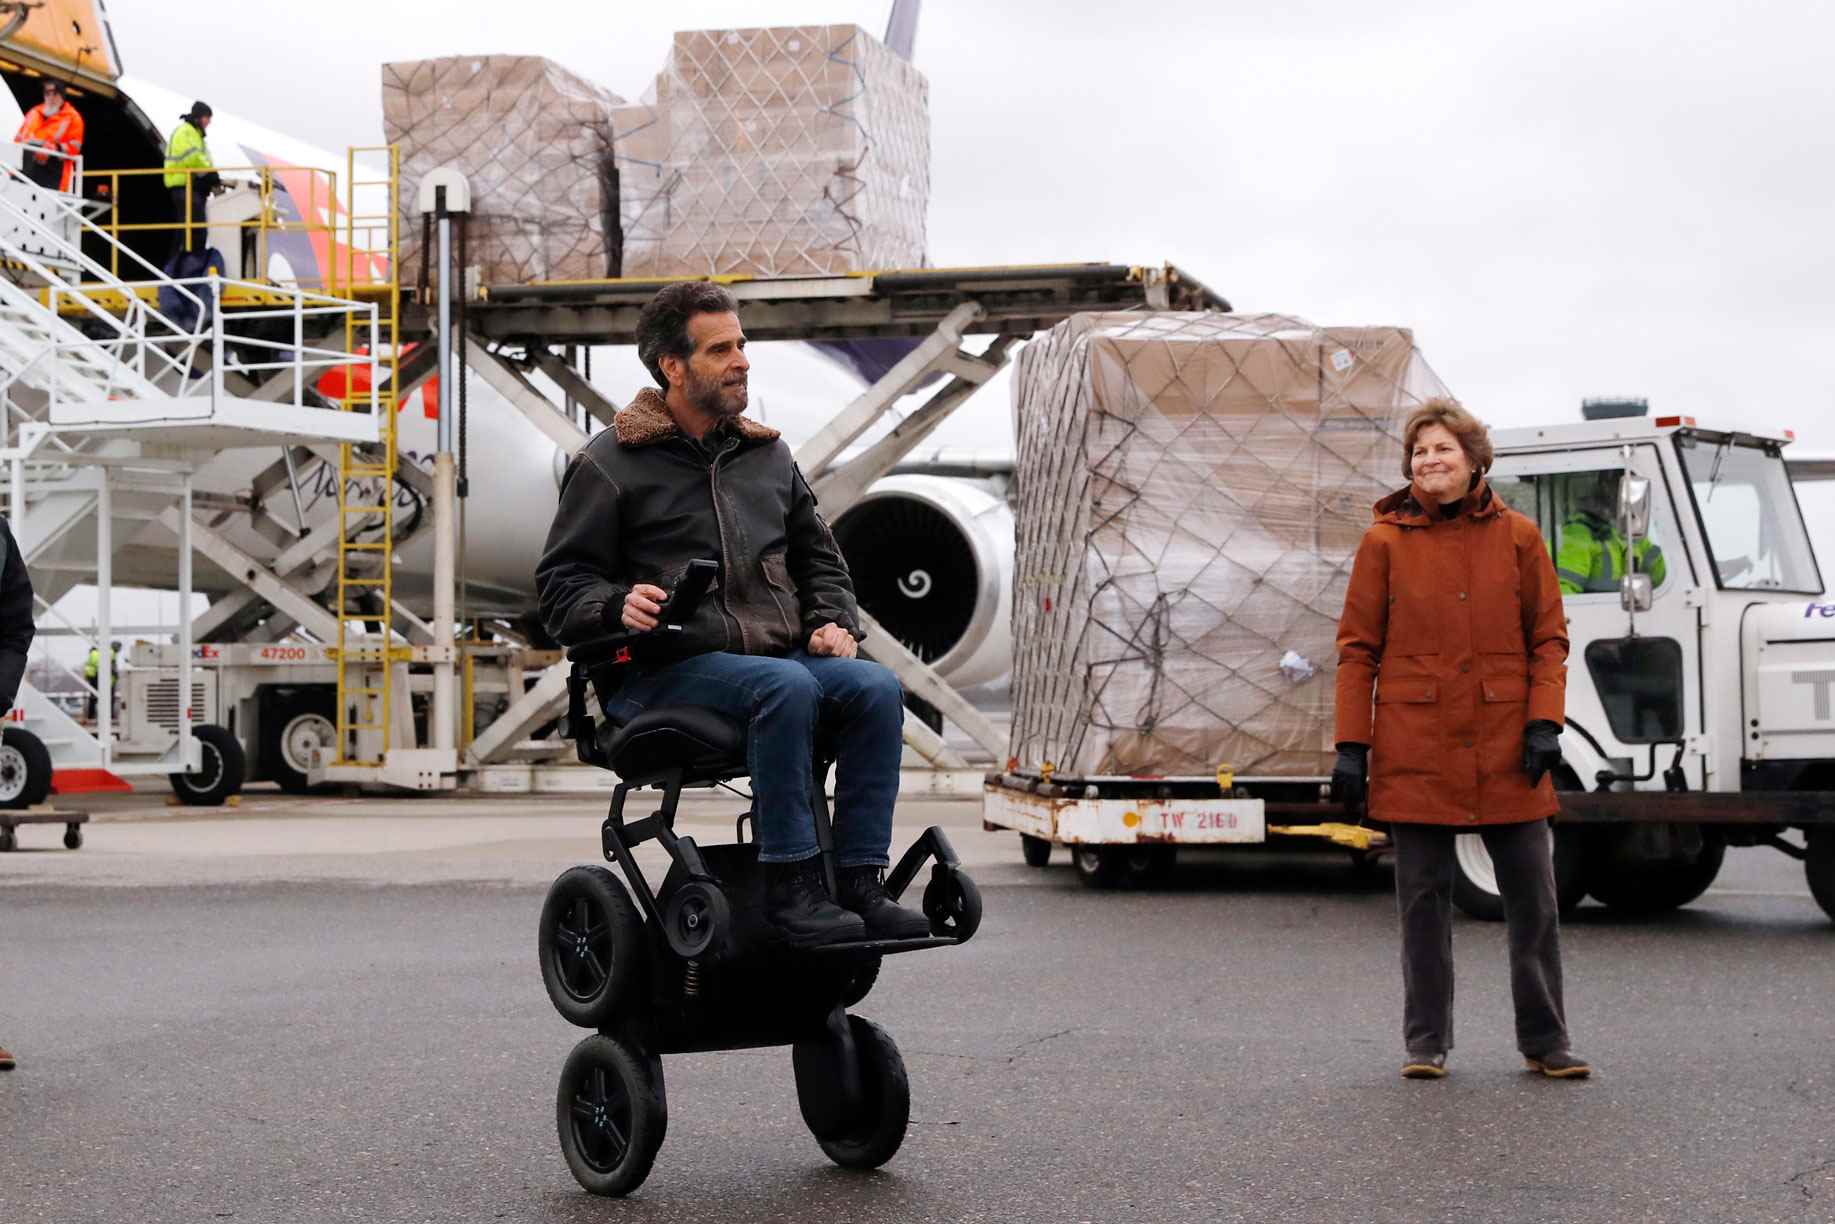 ABD'li Senatör Jeanne Shaheen (D-NH), sağda, tıbbi çalışanları ve COVID-19 virüs salgınıyla mücadele eden ilk müdahale görevlilerini korumak için Çin'in Şanghay kentinden 110.000 pound'dan fazla kişisel koruyucu ekipman (KKD) teslim edildiğinden mucit Dean Kamen'e bakıyor. 30 Nisan 2020 Perşembe, Manchester, New Hampshire'daki Manchester-Boston Bölge Havaalanında bir kargo uçağından boşaltıldı